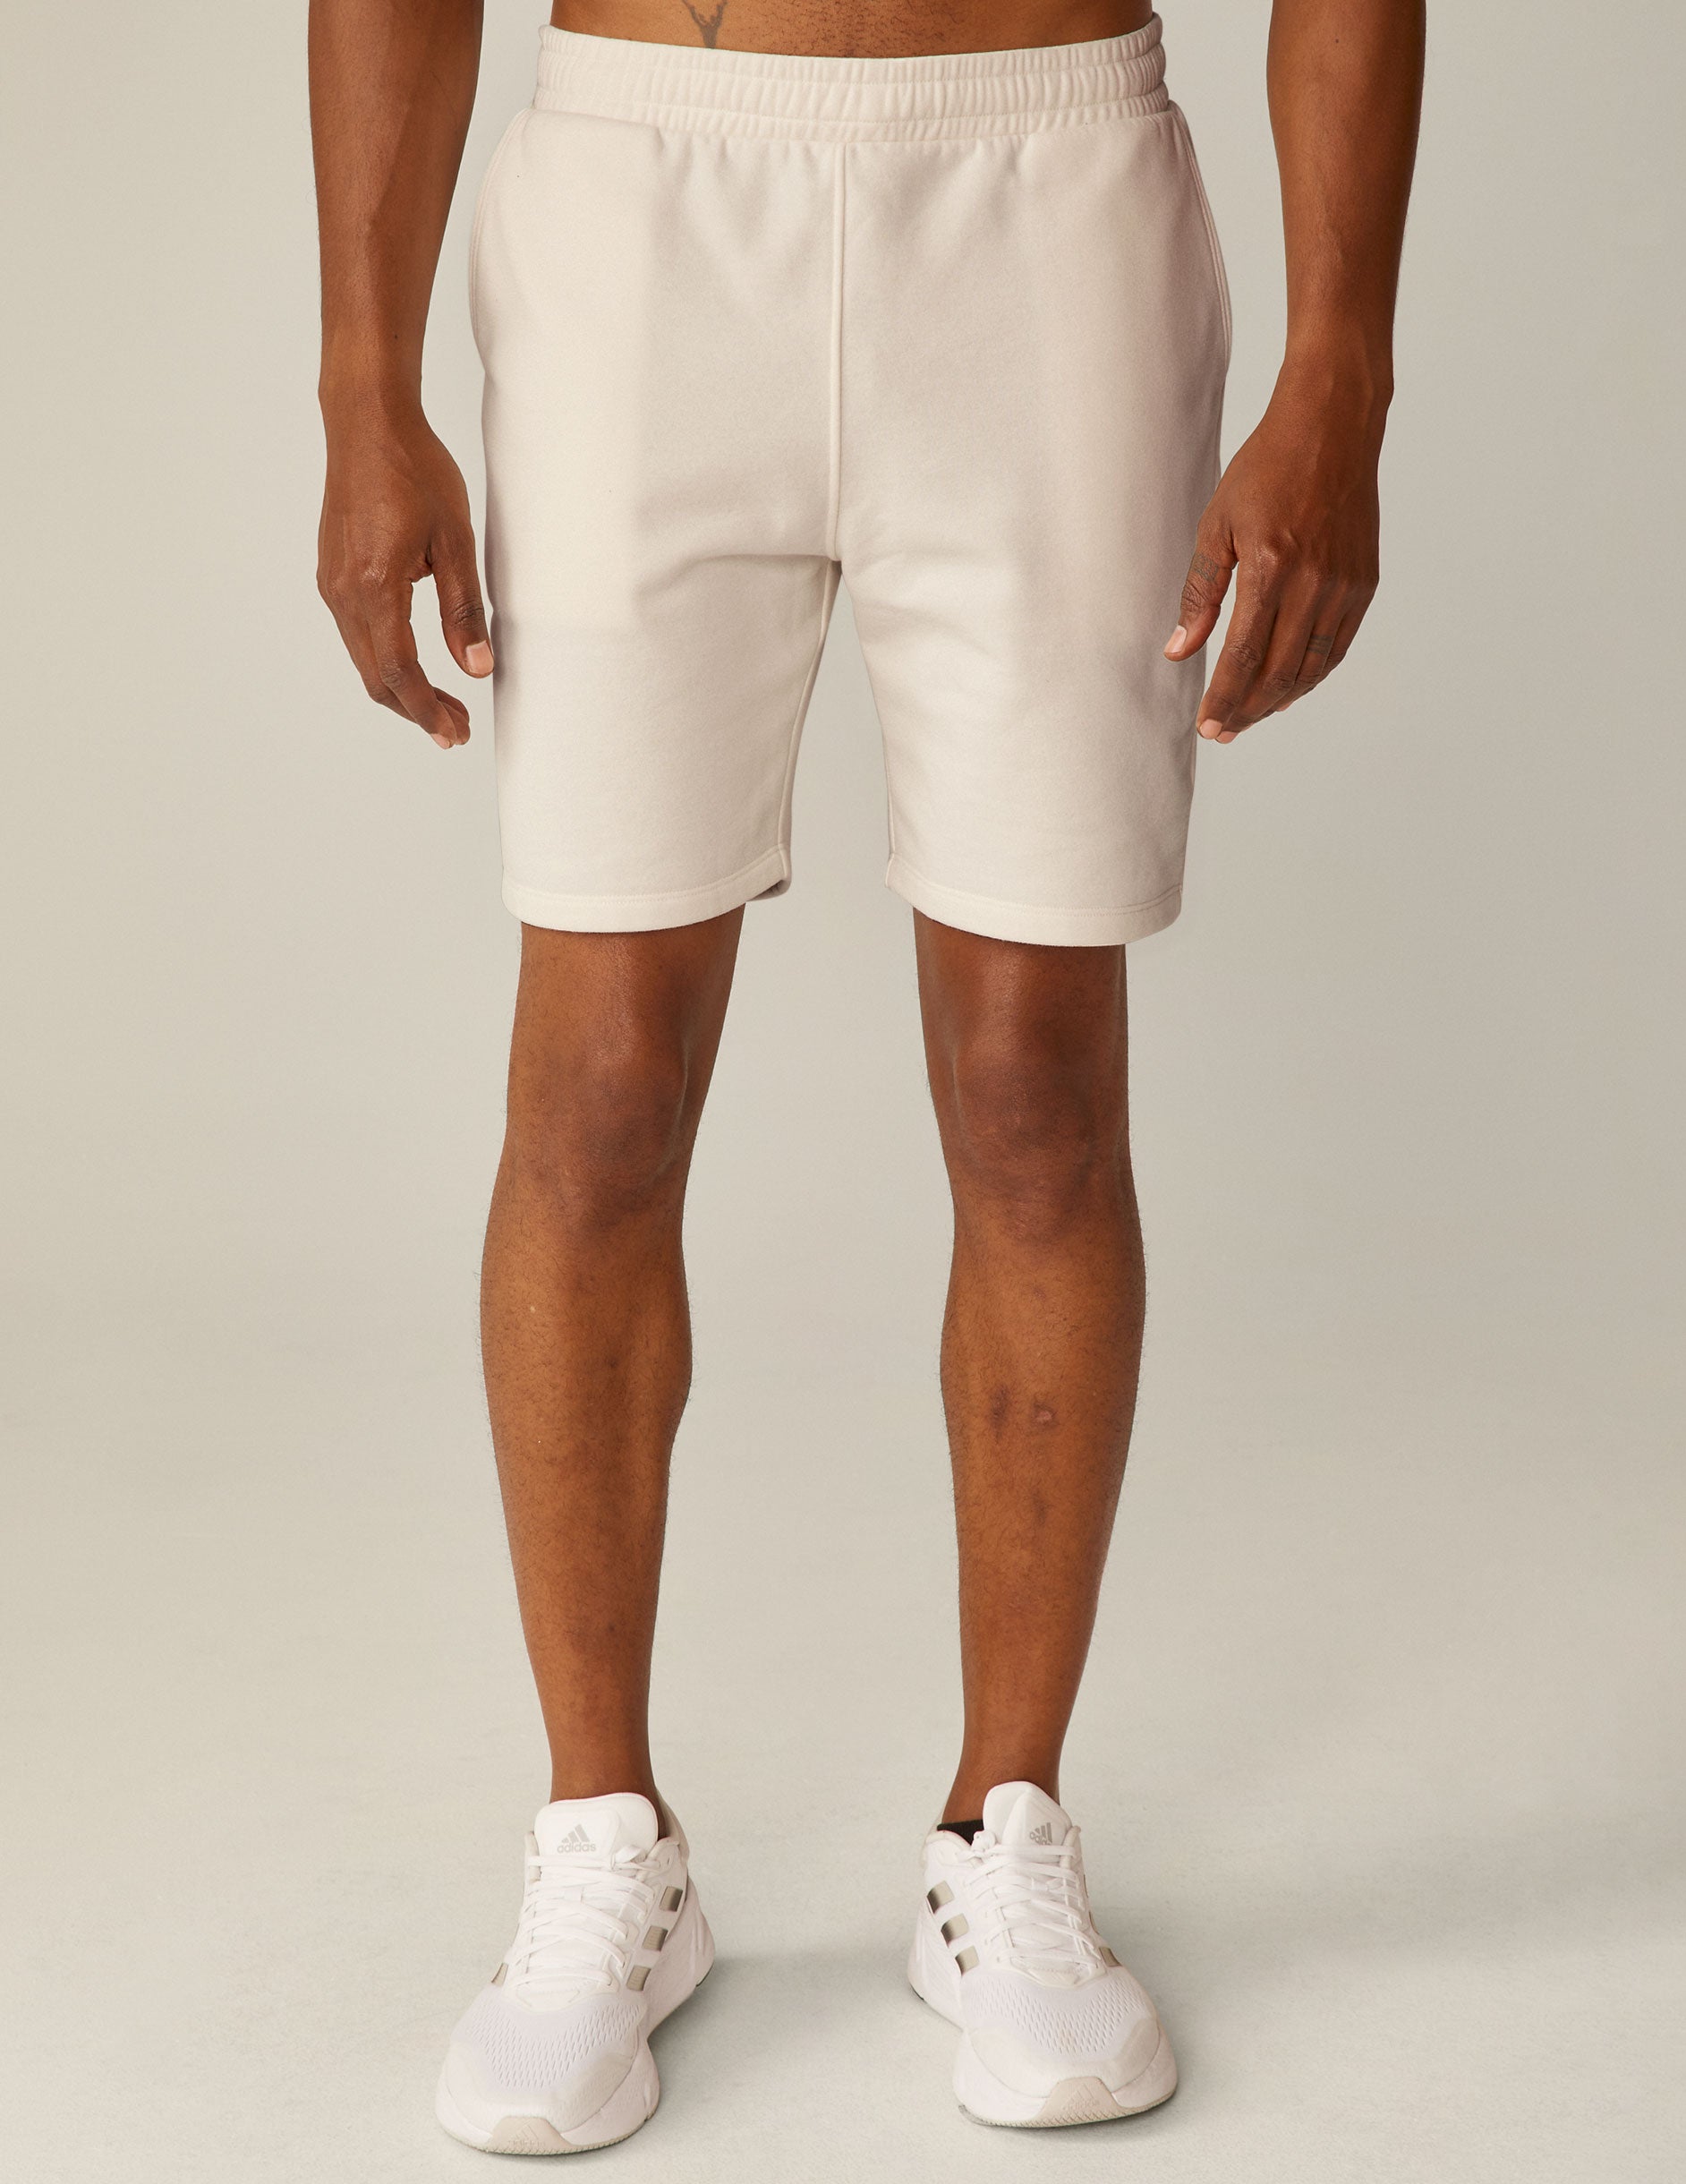 model is wearing white men's sweatshorts with pockets. 